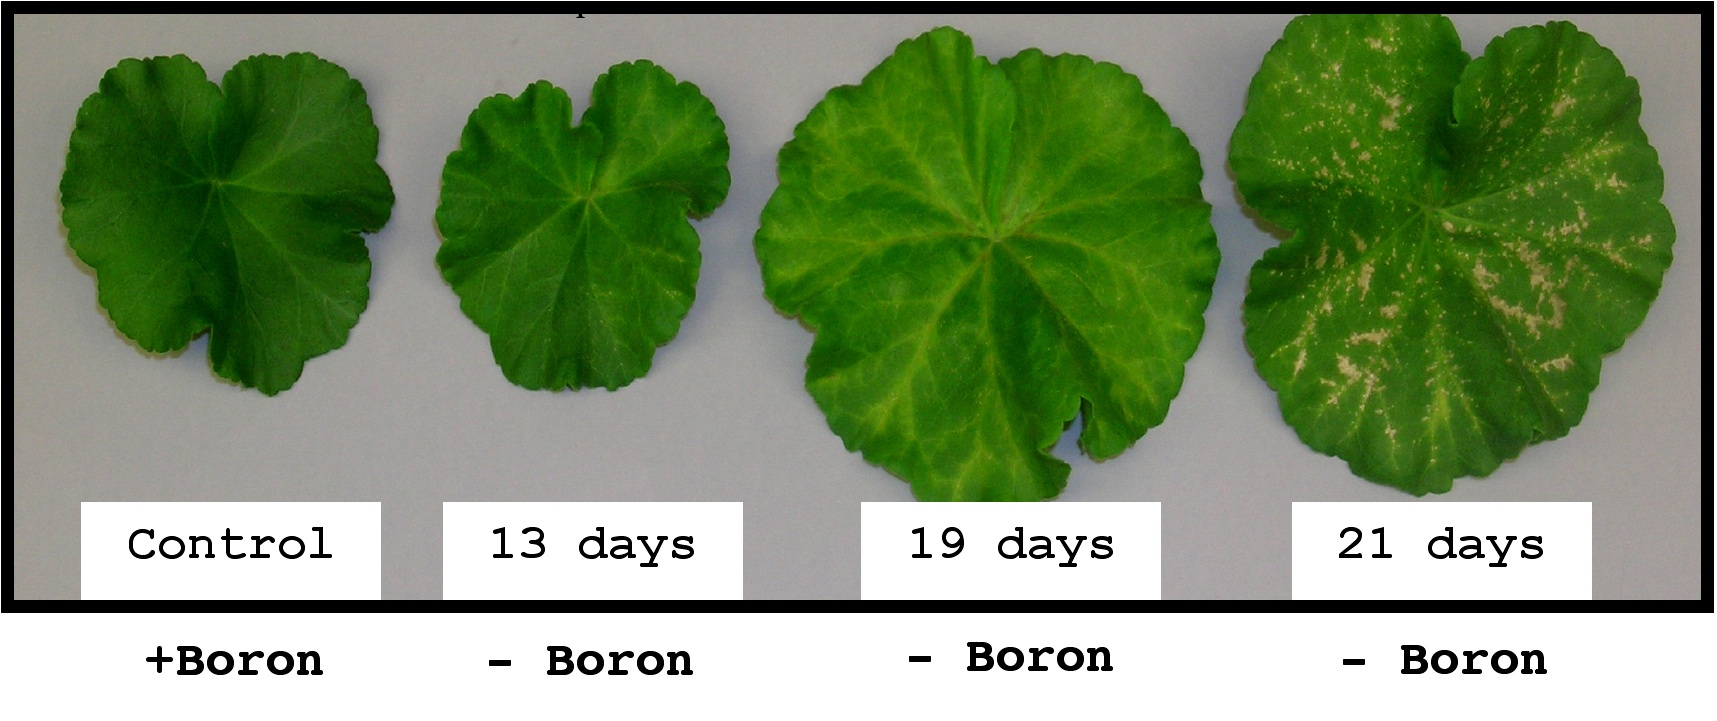 Cómo la deficiencia de boro afecta a una planta con el tiempo.